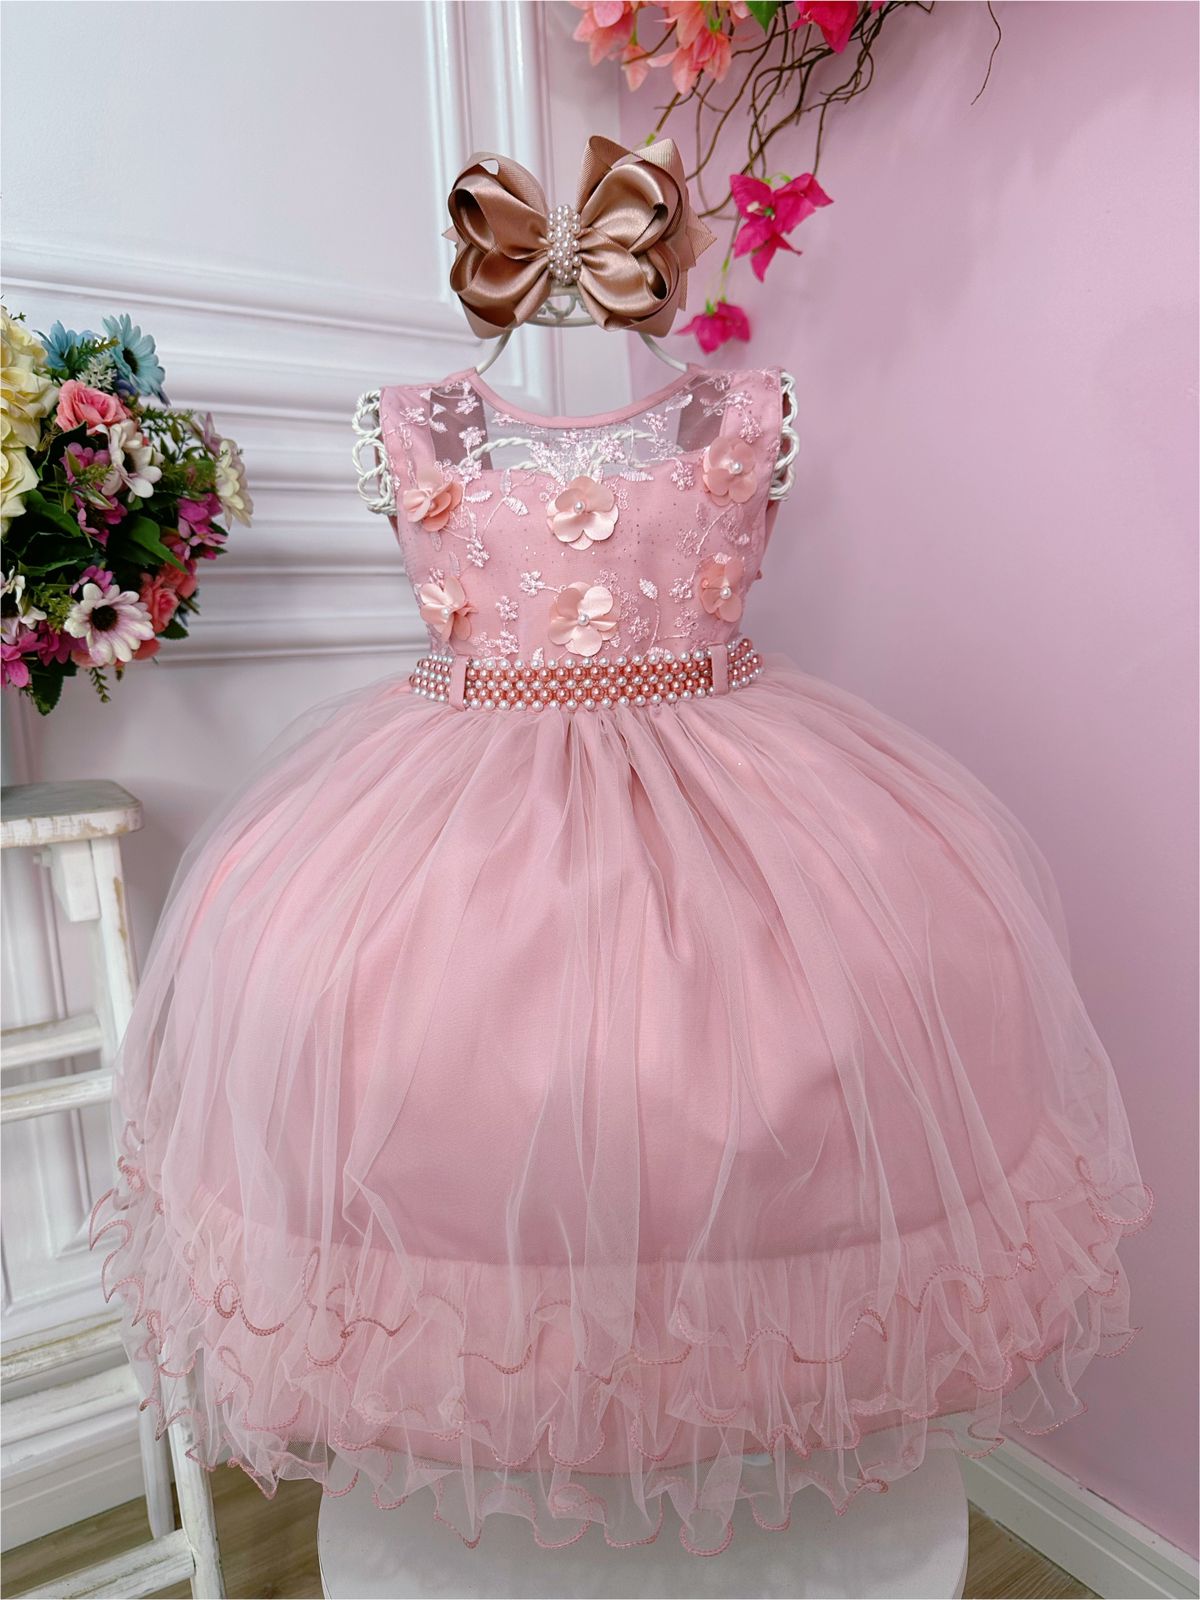 Vestido Infantil Rose C/ Aplique de Flores e Renda Luxo